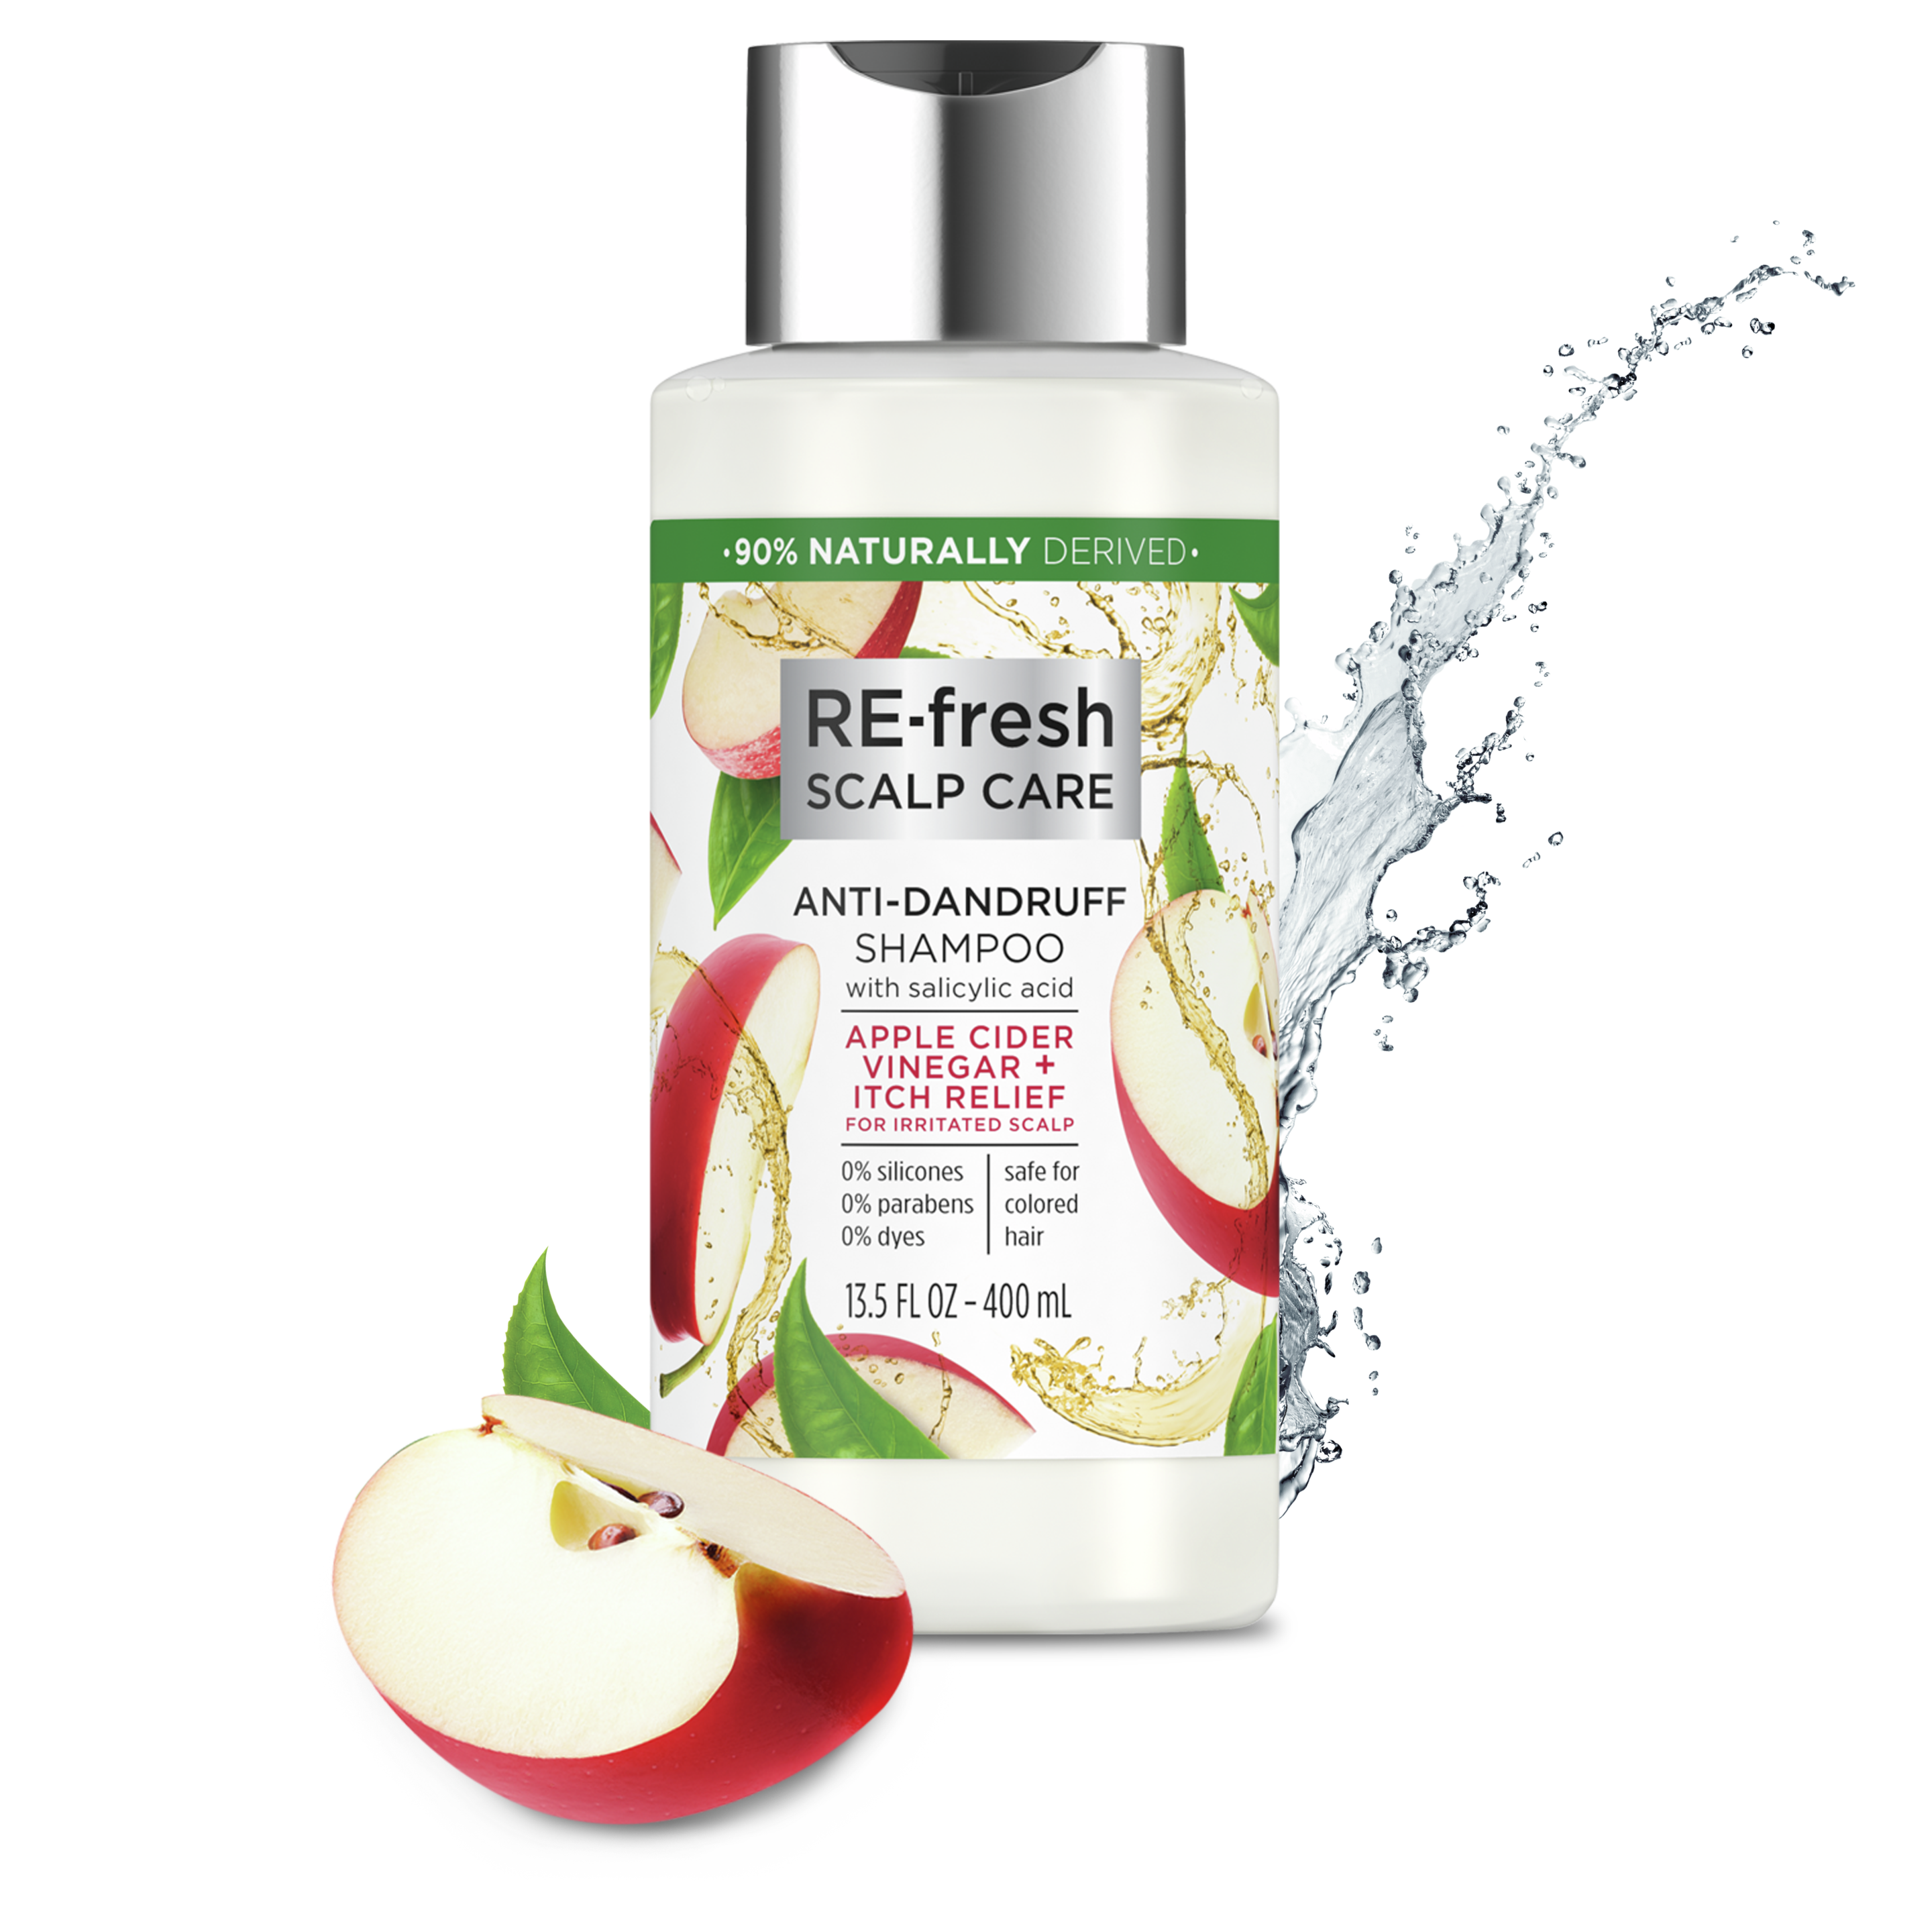 apple cider vinegar + itch relief anti-dandruff shampoo